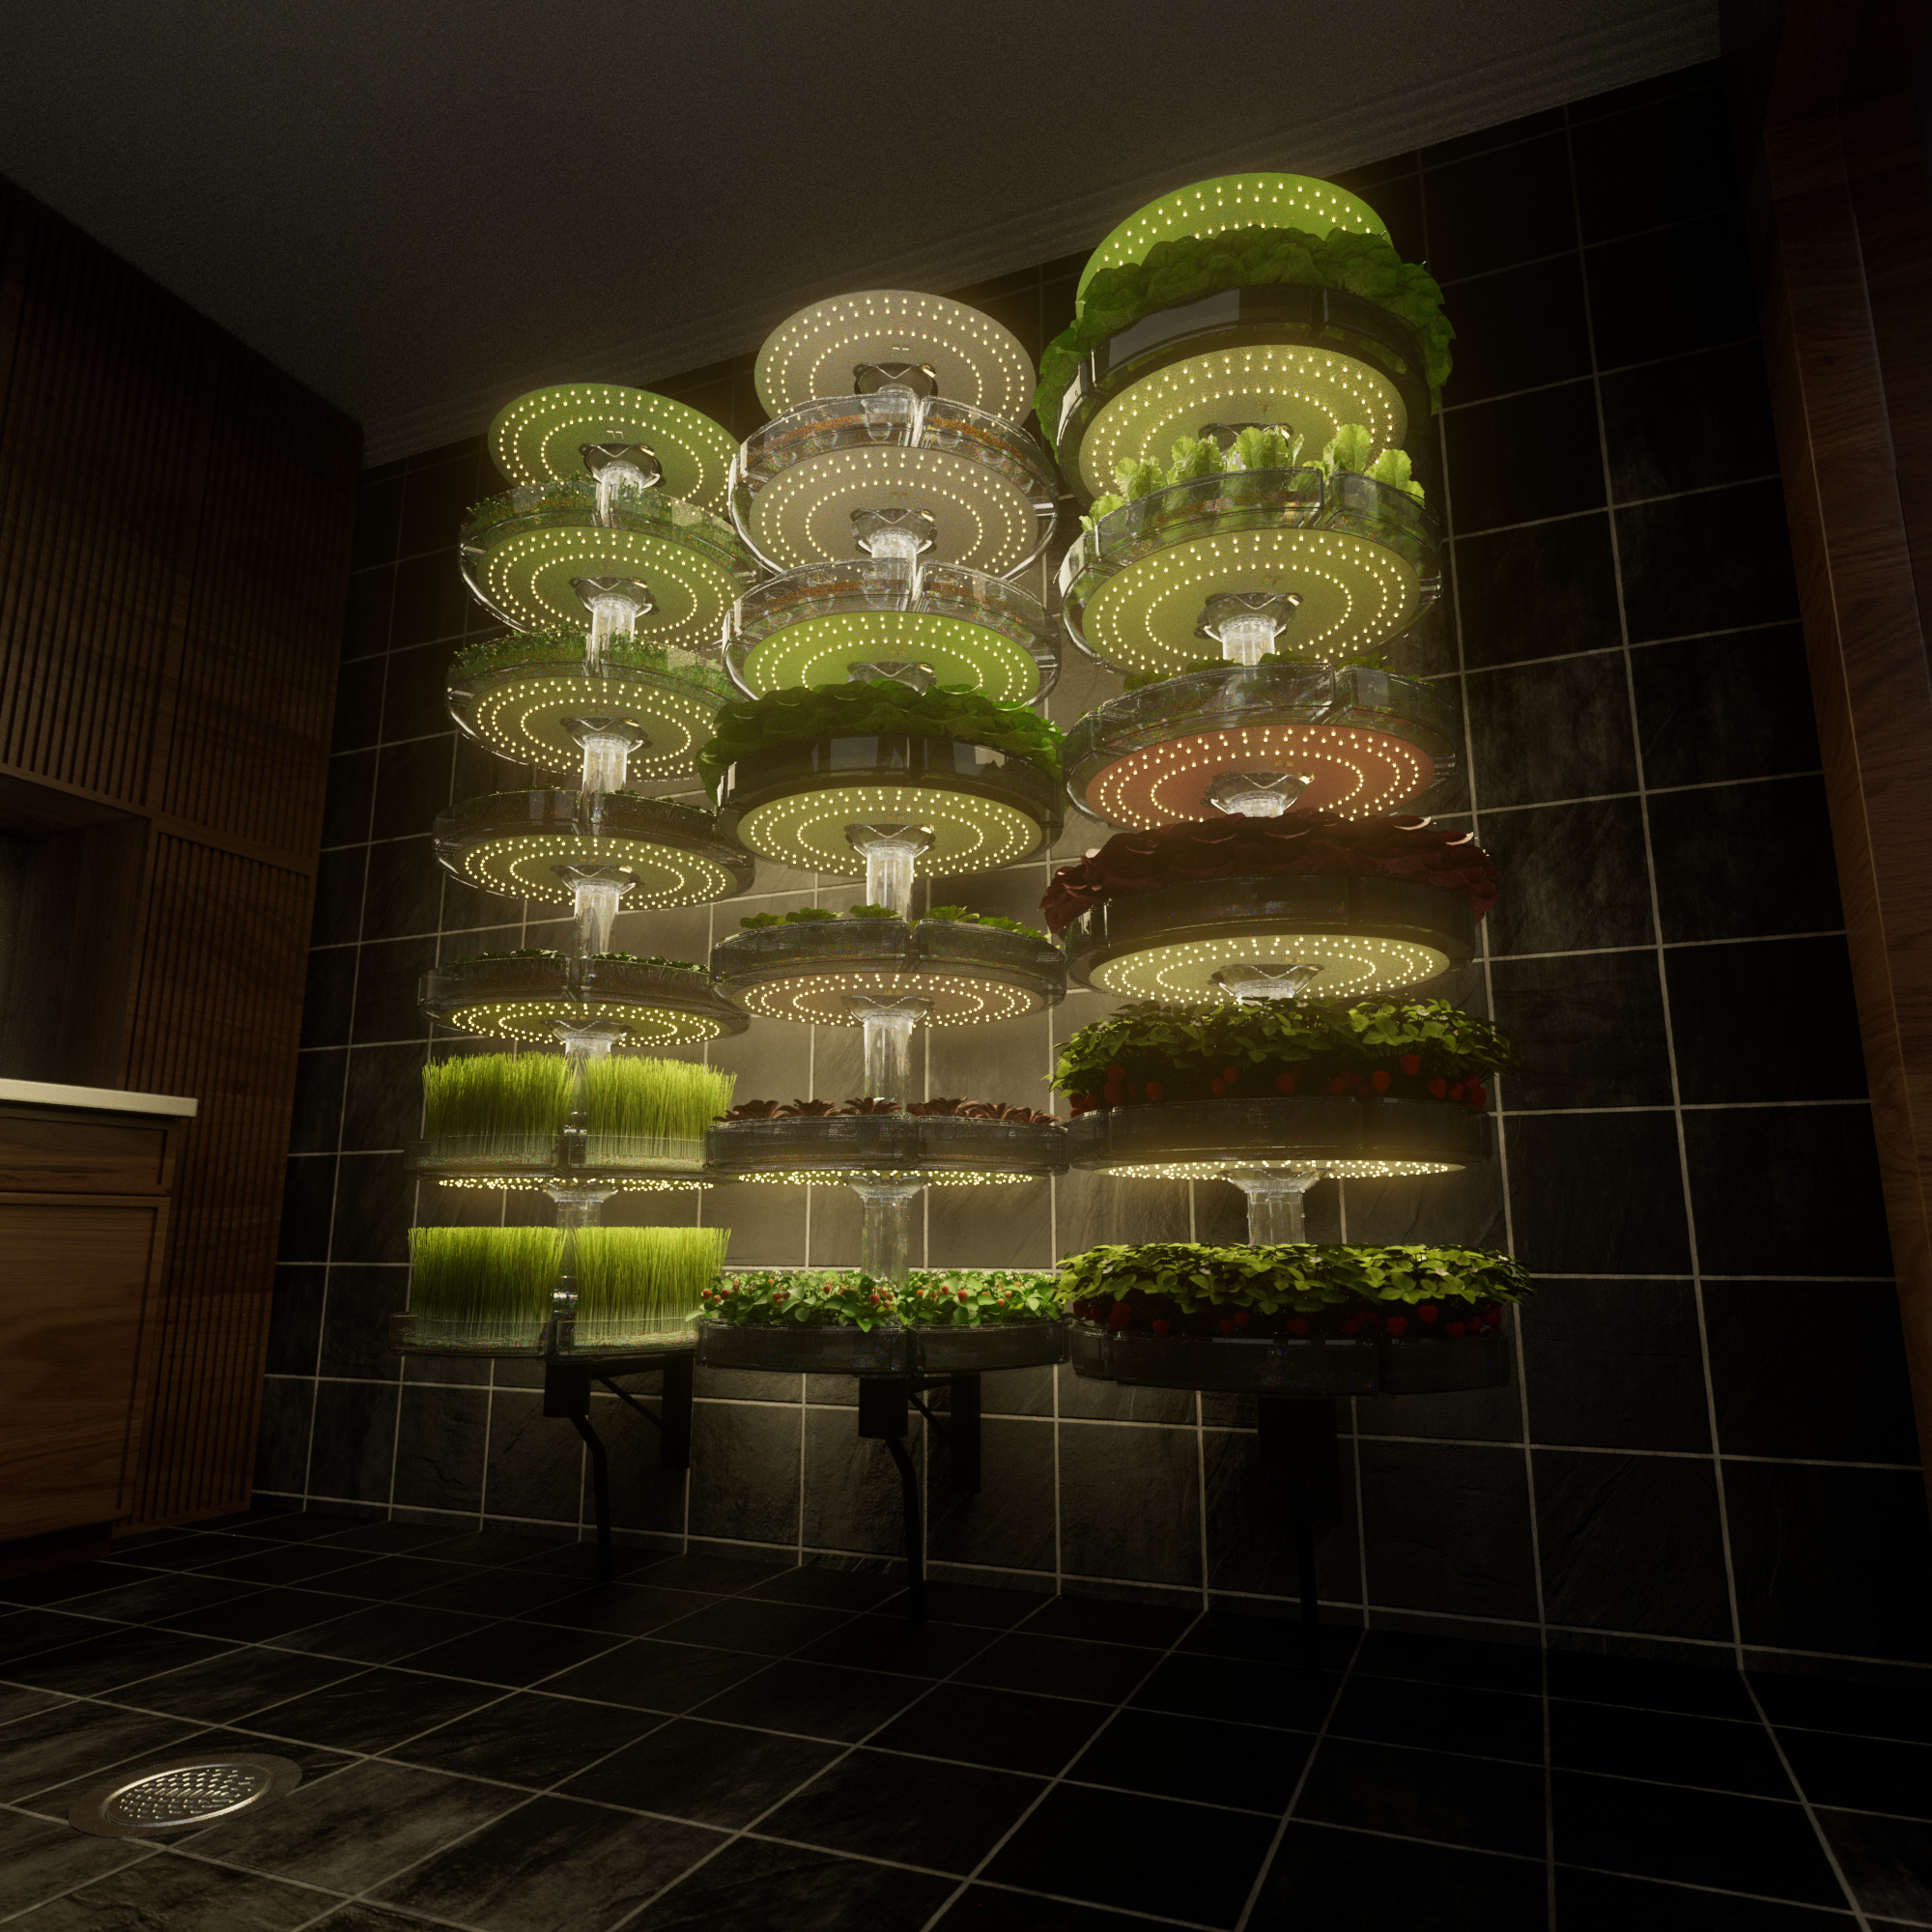 3D product renders of indoor garden